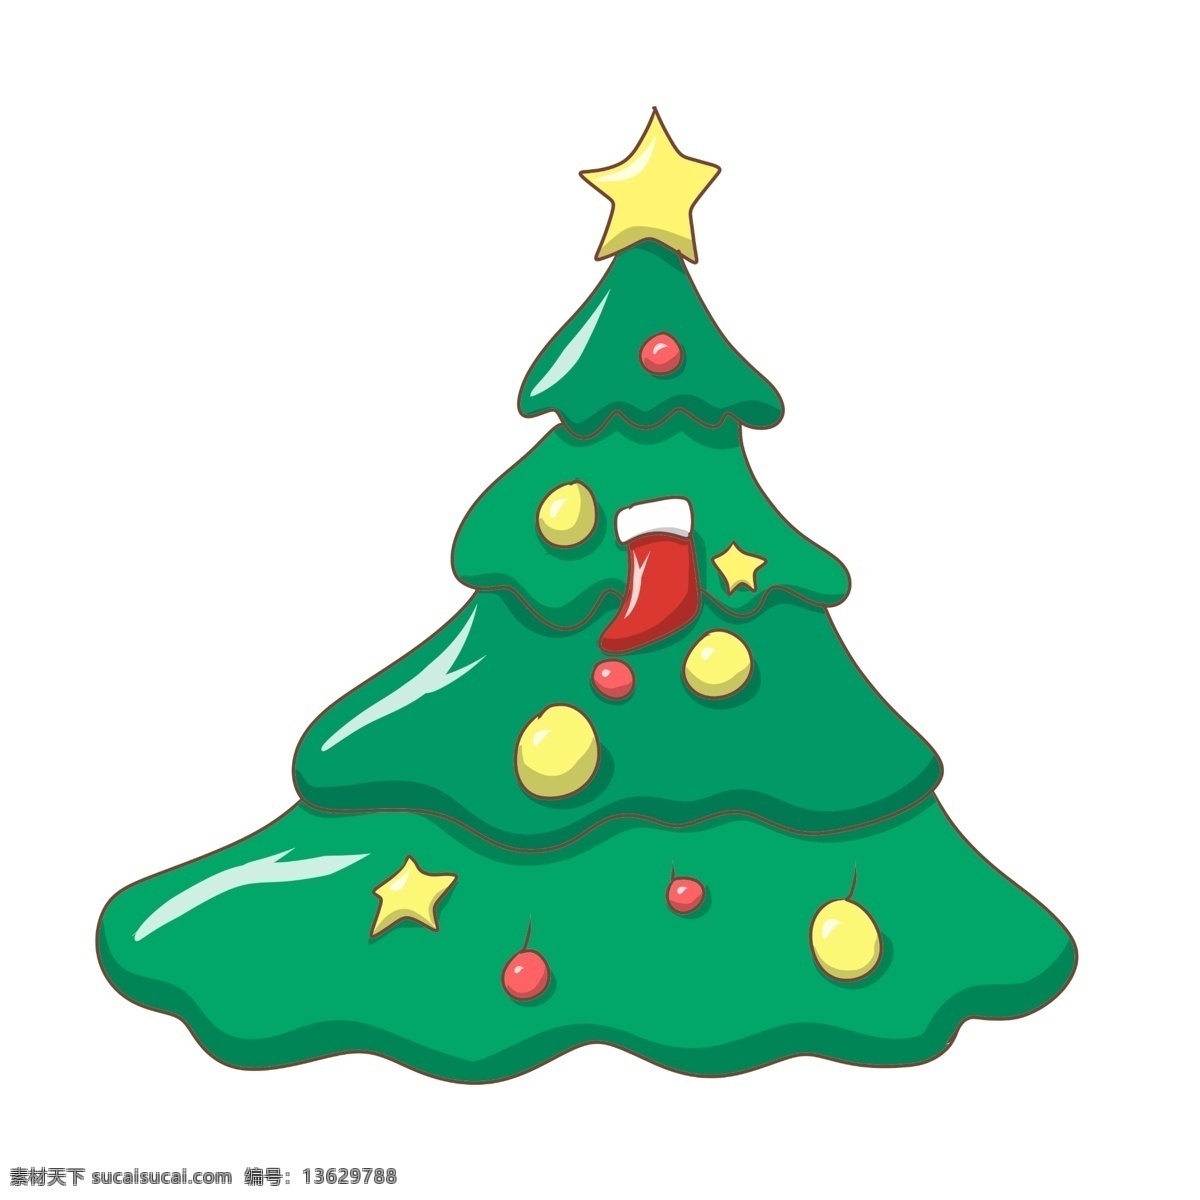 手绘 卡通 圣诞树 插画 手绘圣诞树 卡通圣诞树 圣诞树插画 红色果子 黄色星星 绿色的圣诞树 红色的圣诞袜 黄色的果果